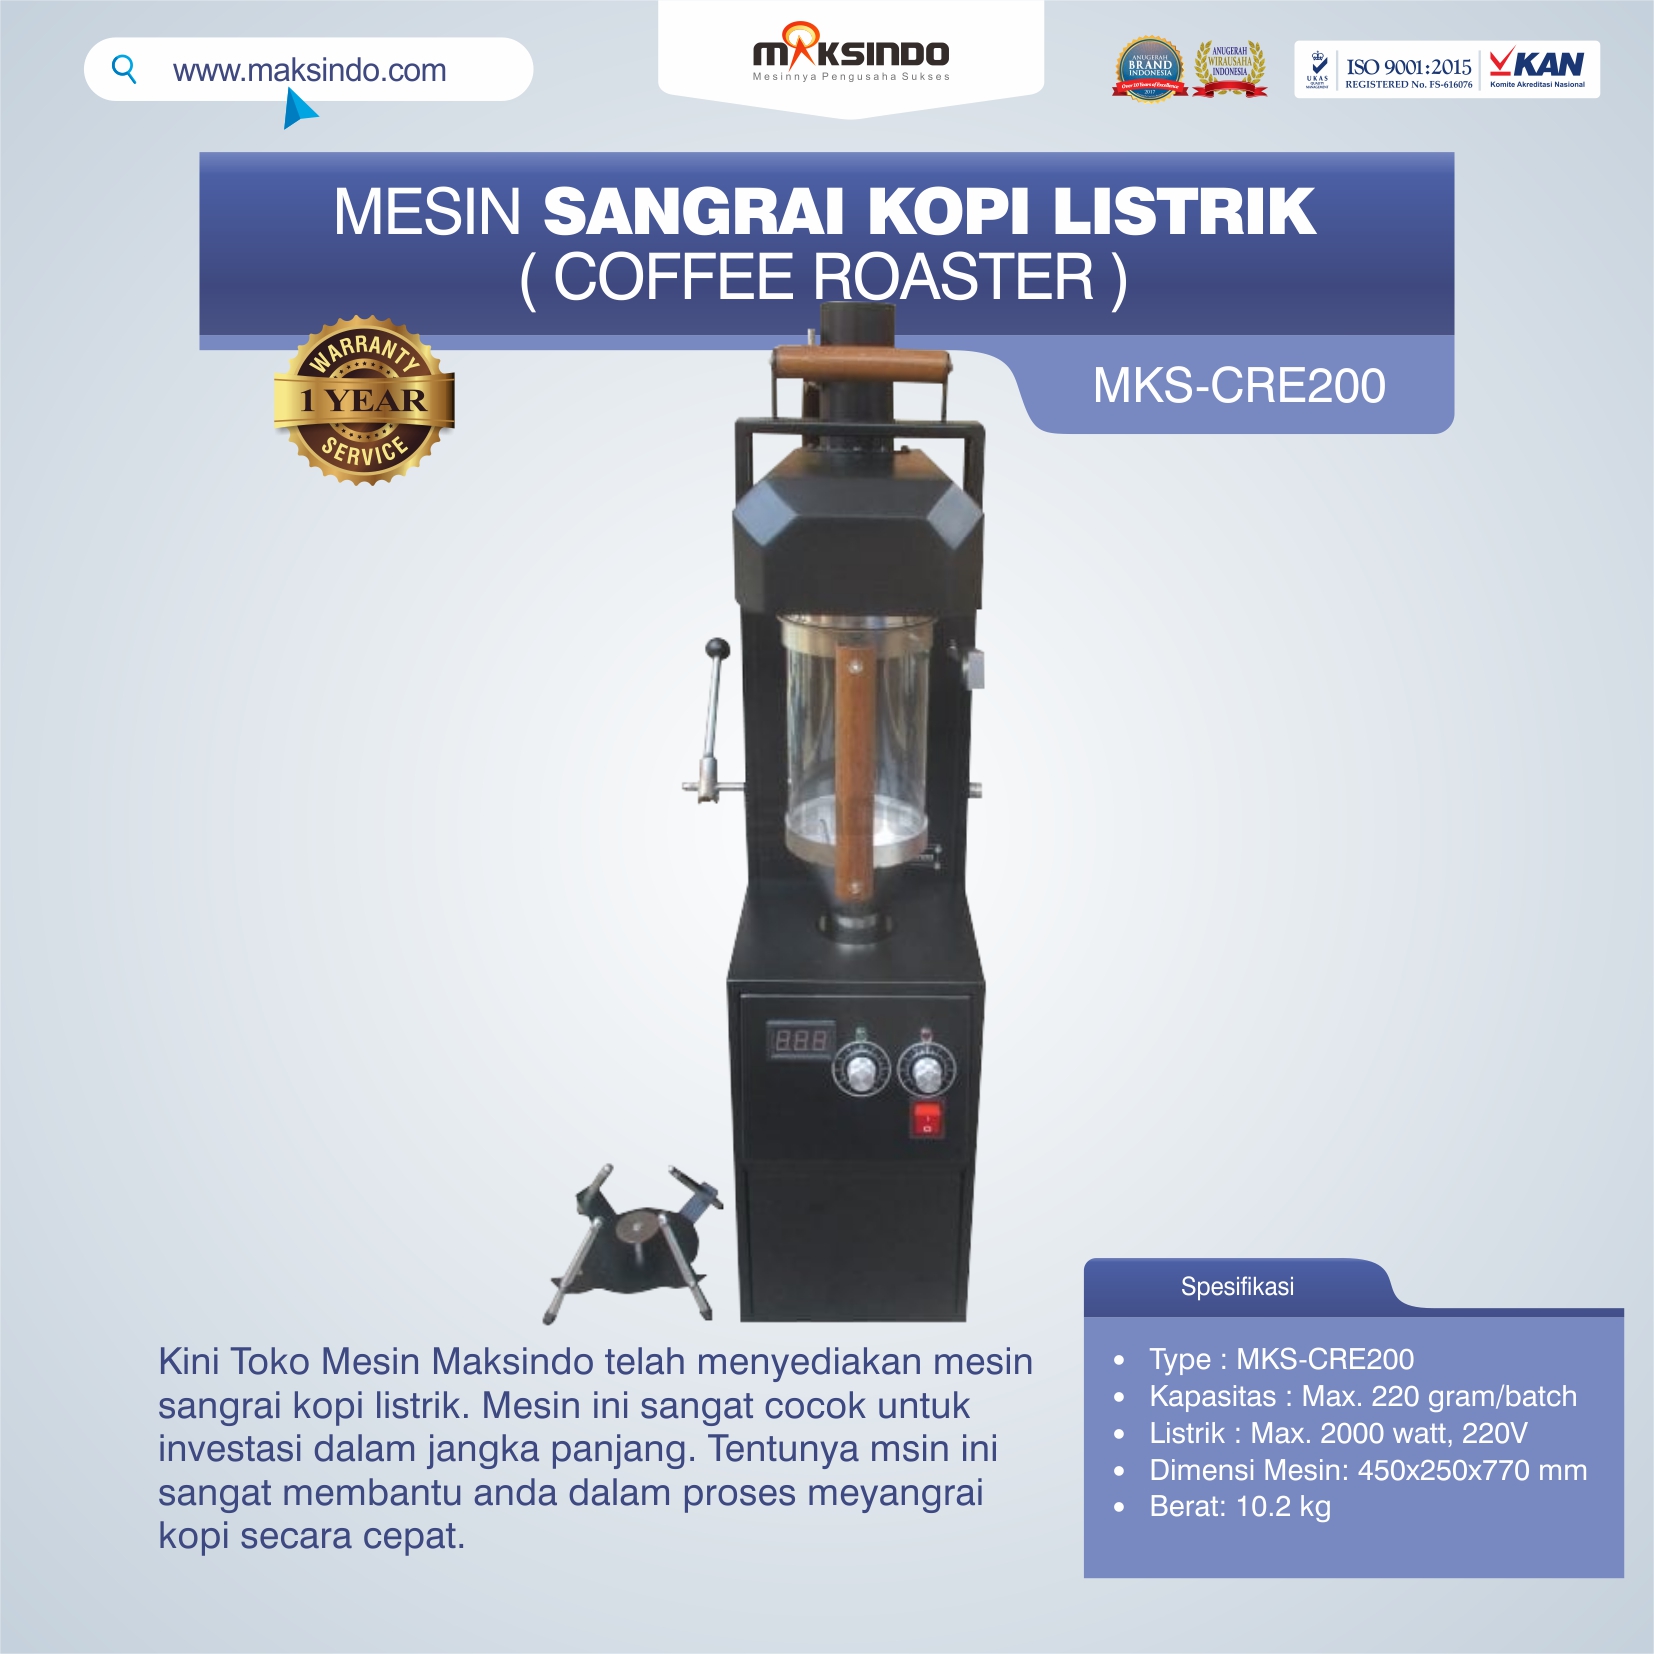 Jual Mesin Sangrai Kopi Listrik (Coffee Roaster) MKS-CRE200 di Semarang